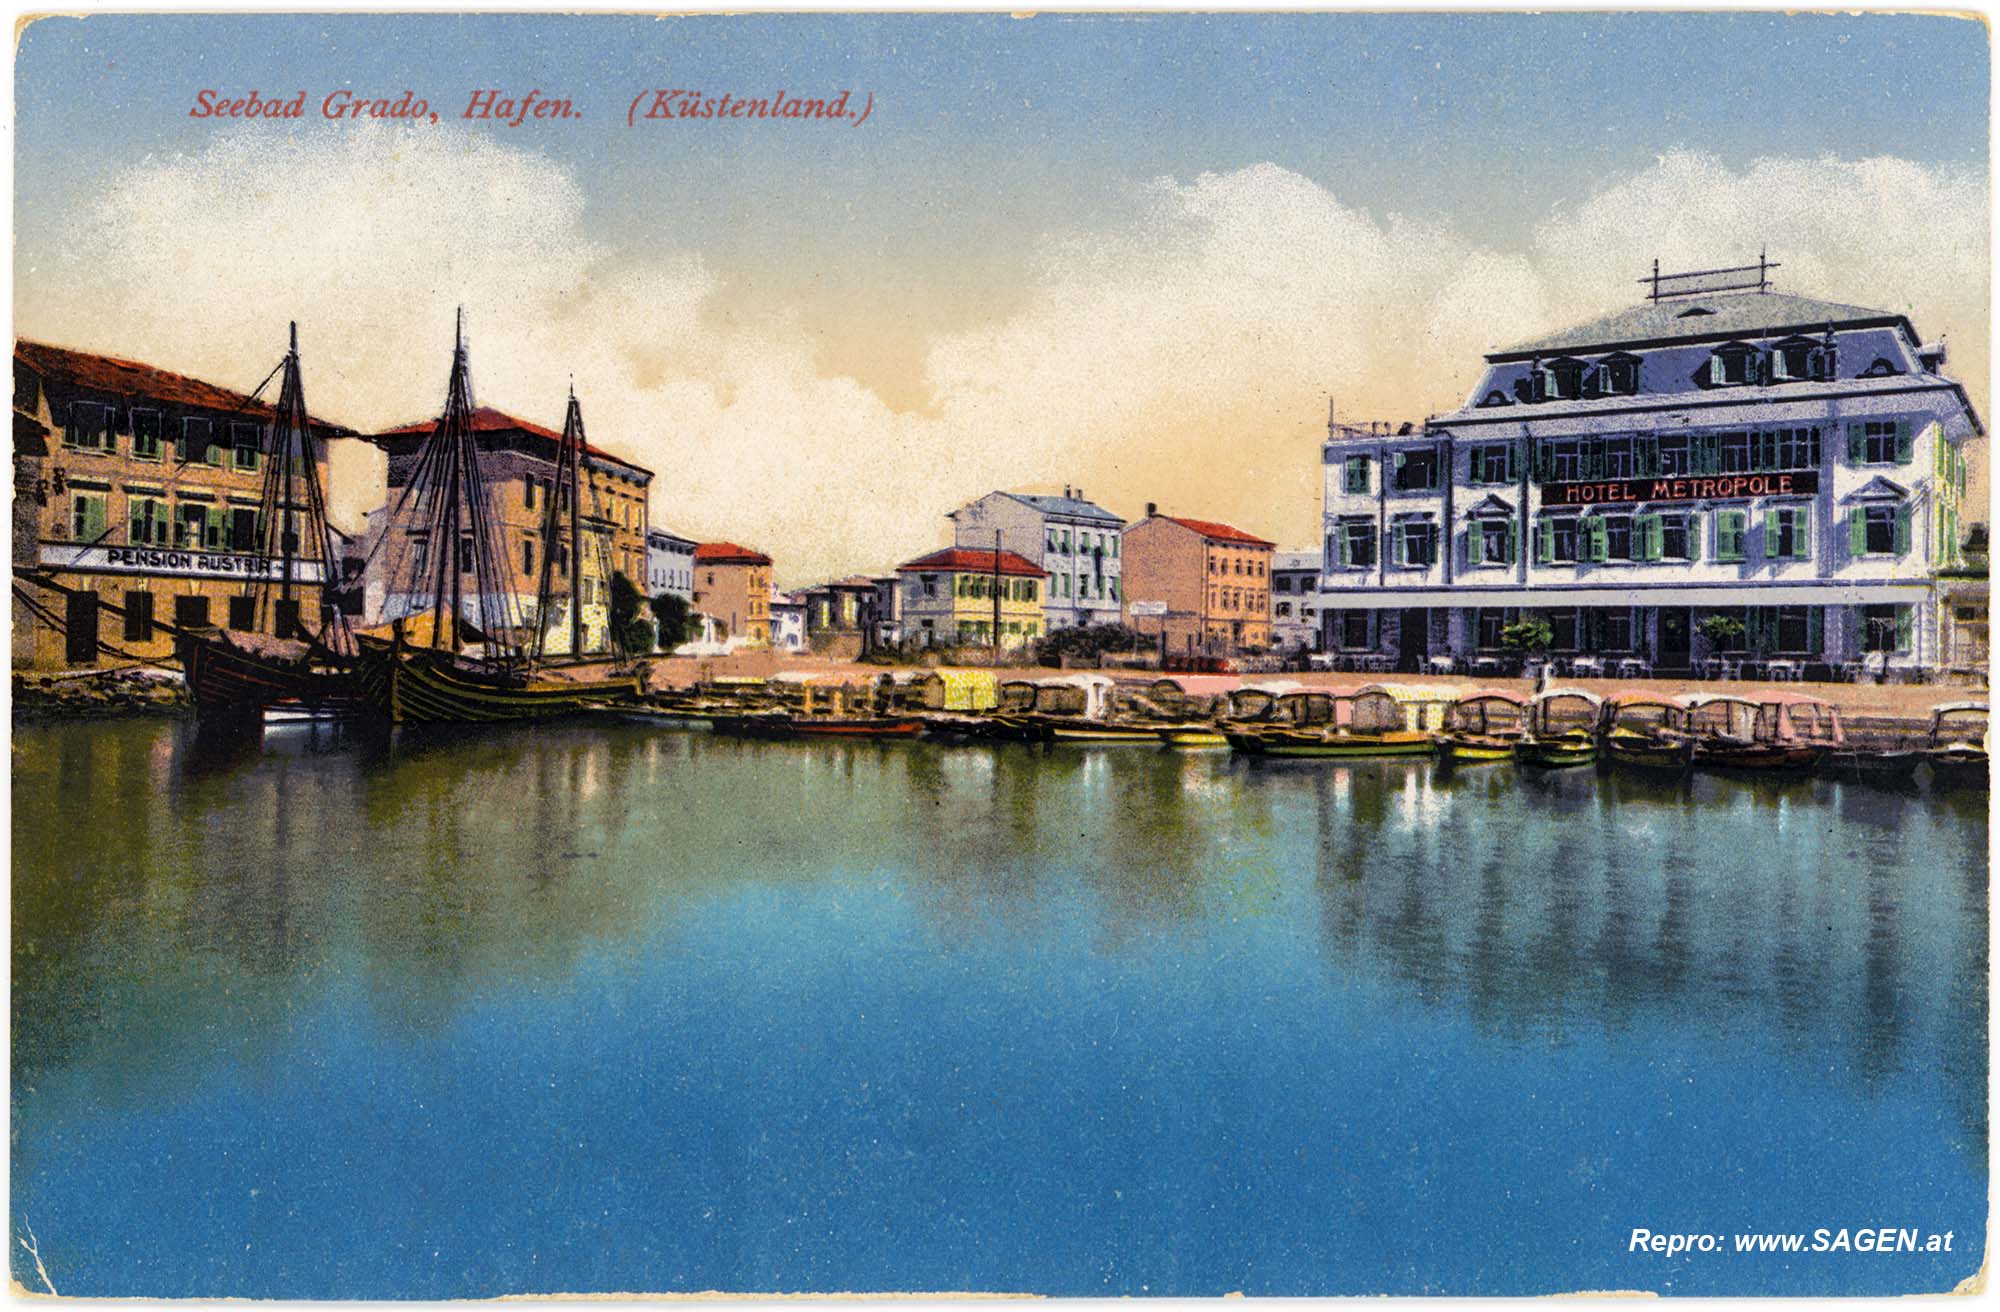 Seebad Grado, Hafen (Küstenland)